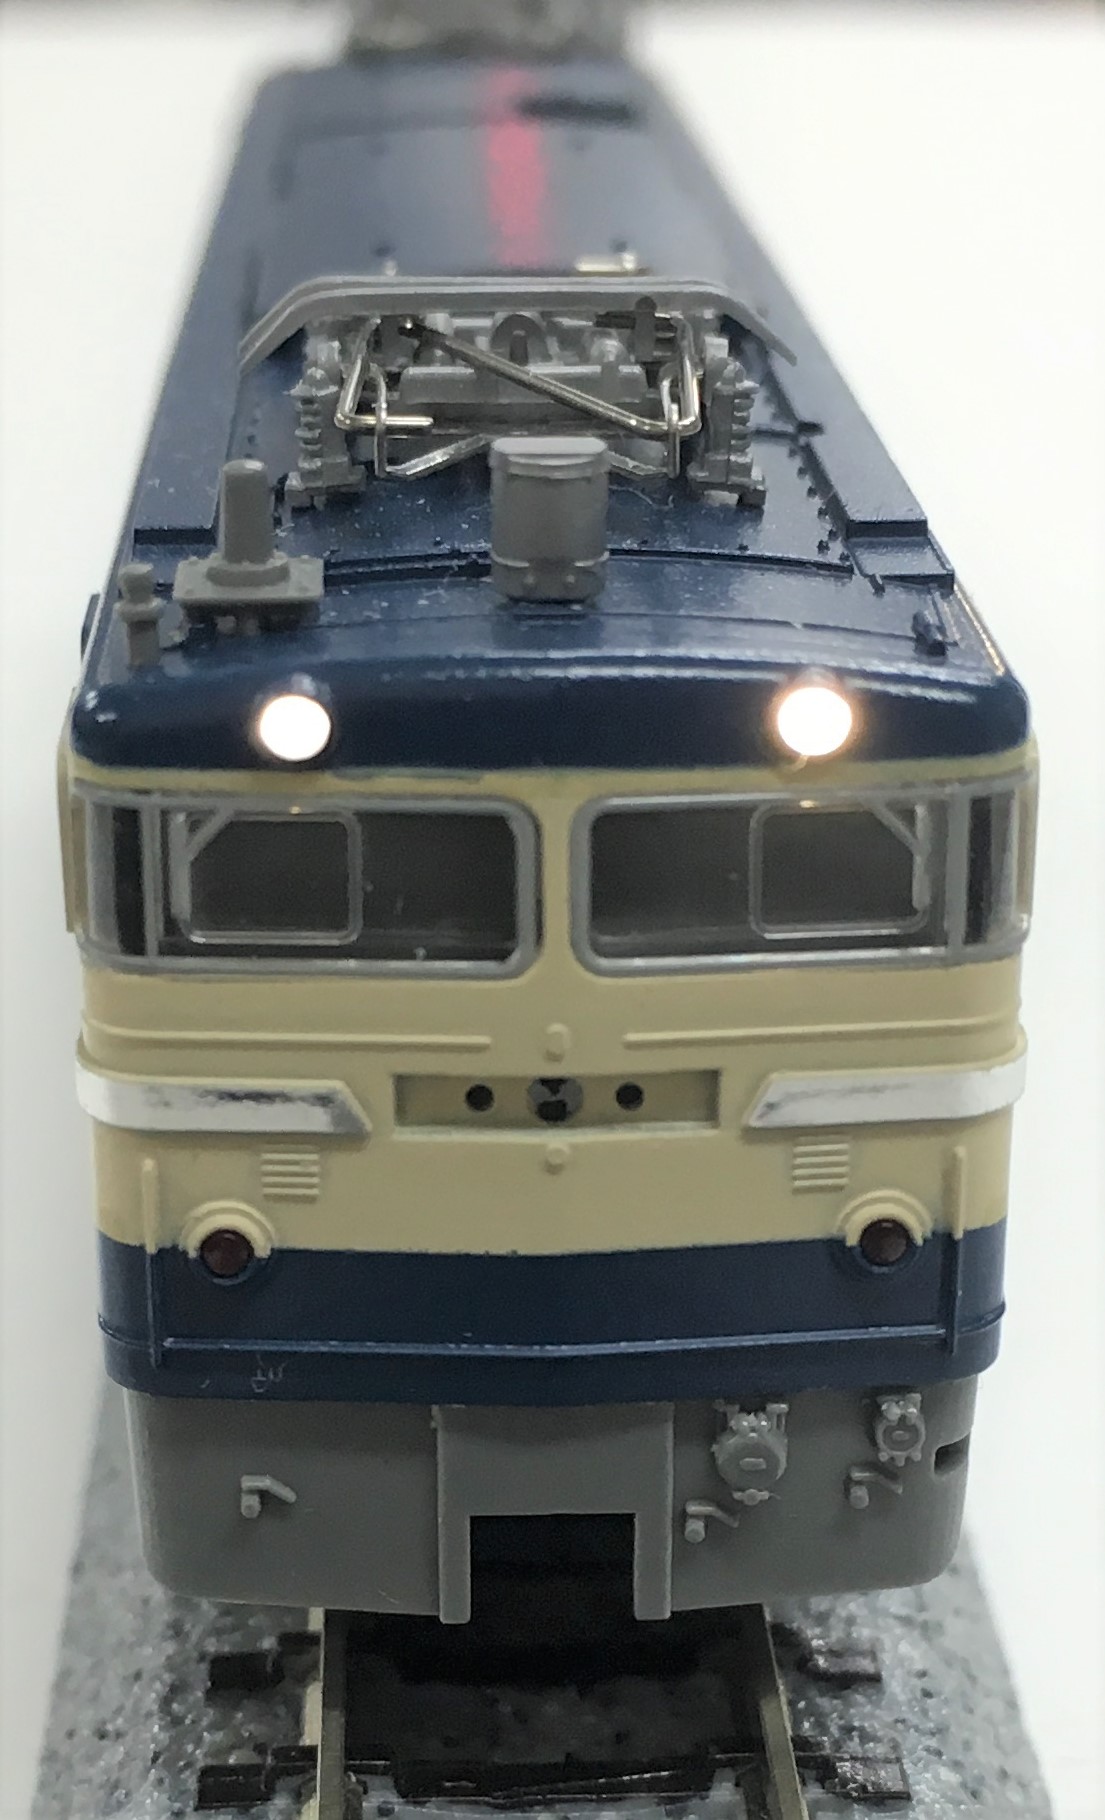 KATO製機関車用電球色LEDライト基板開発中 – モデルトレインプラス公式